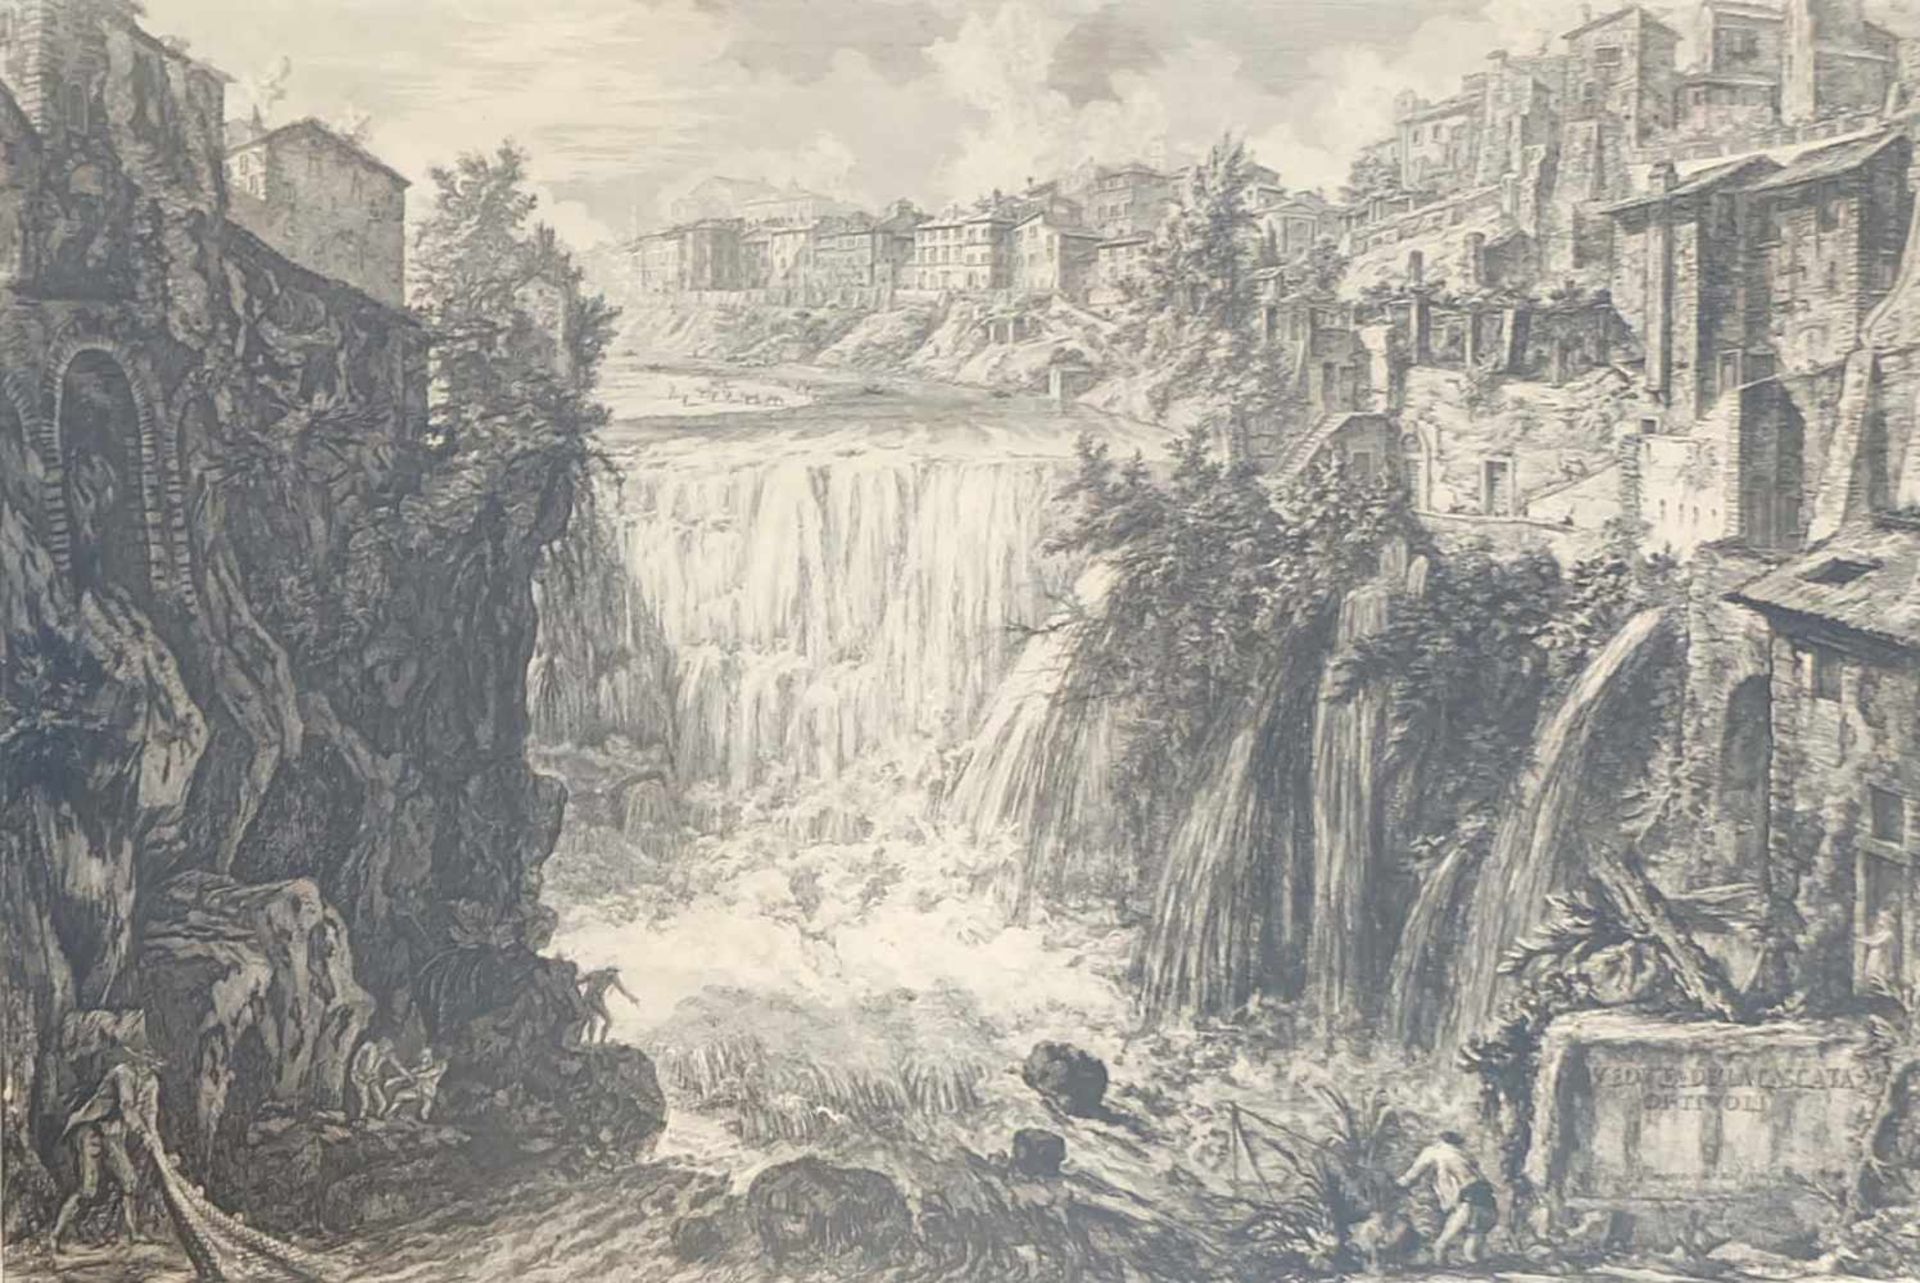 PIRANESI, Giovanni Battista (* 1720 Mogliano Veneto †1778 Rom), Kupferstich, "Veduta della cascata